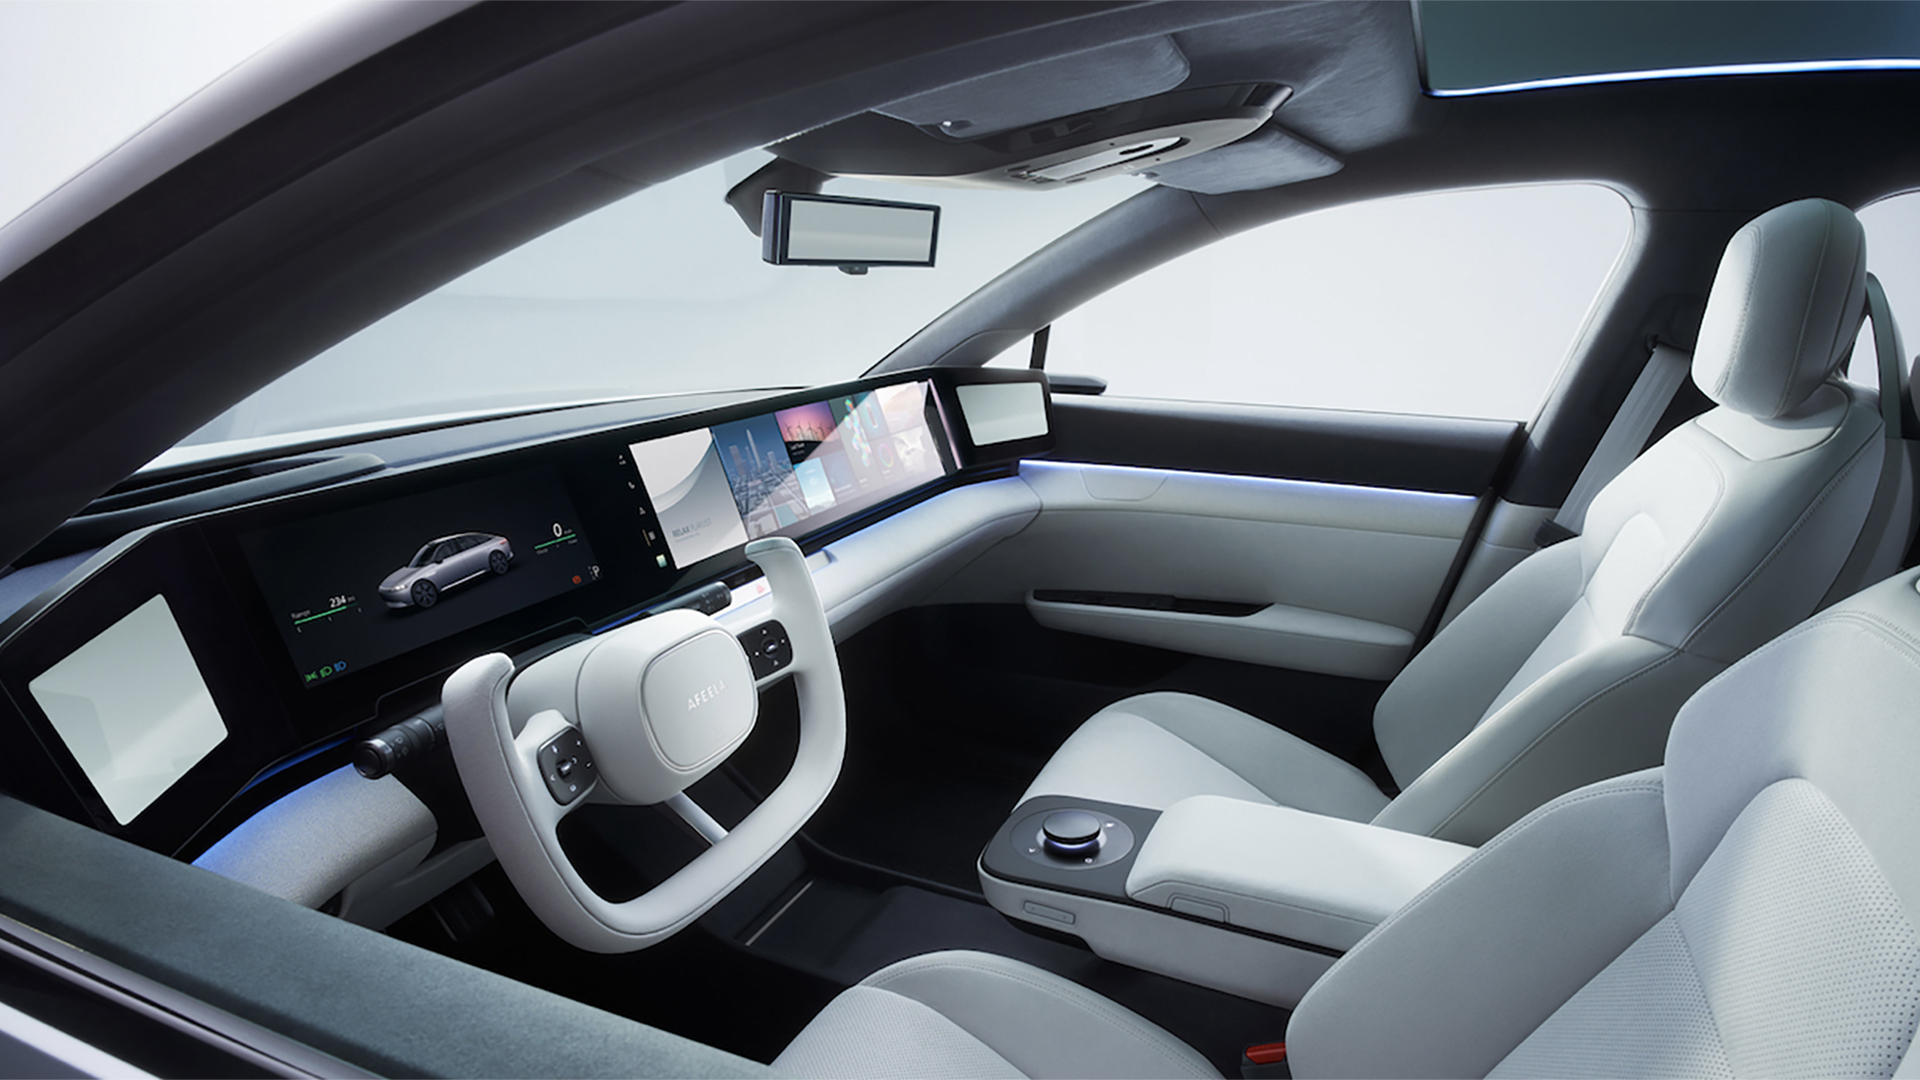 Las pantallas para todos los ocupantes del auto son una de las características del AFEELA EV